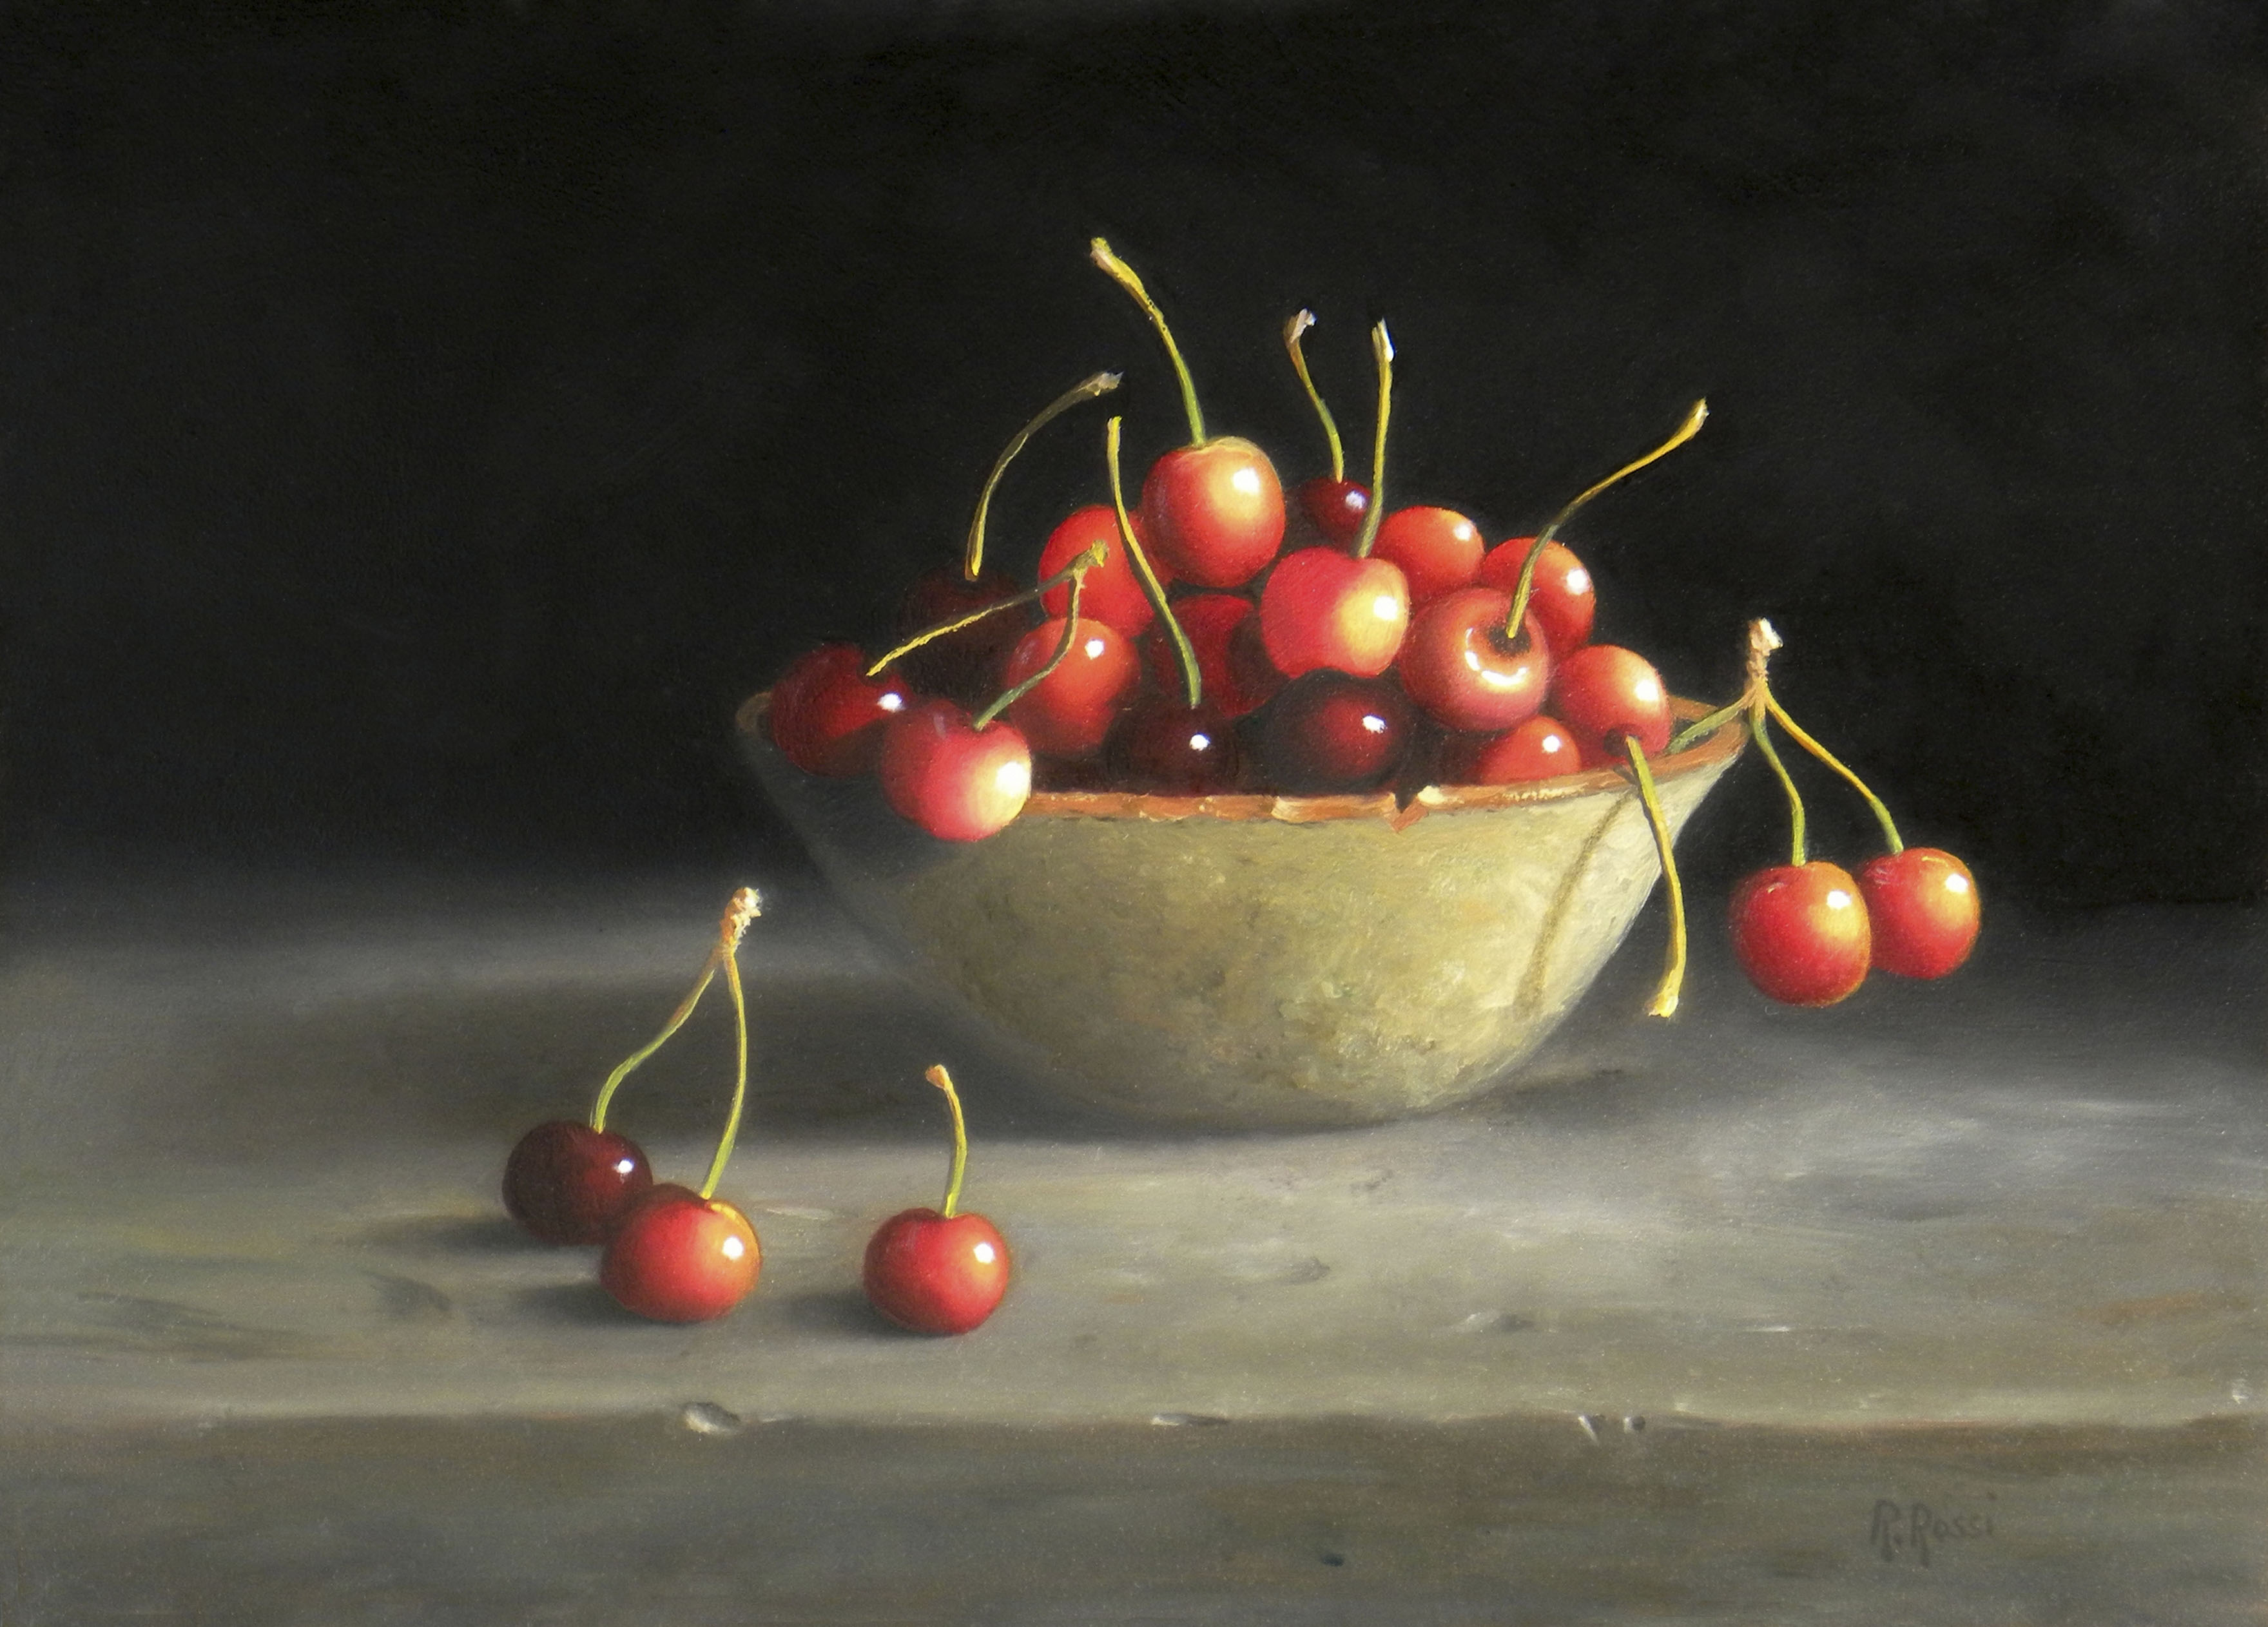 2015 roberta rossi – ciliege nella ciotola – olio su tavola – 18 x 24